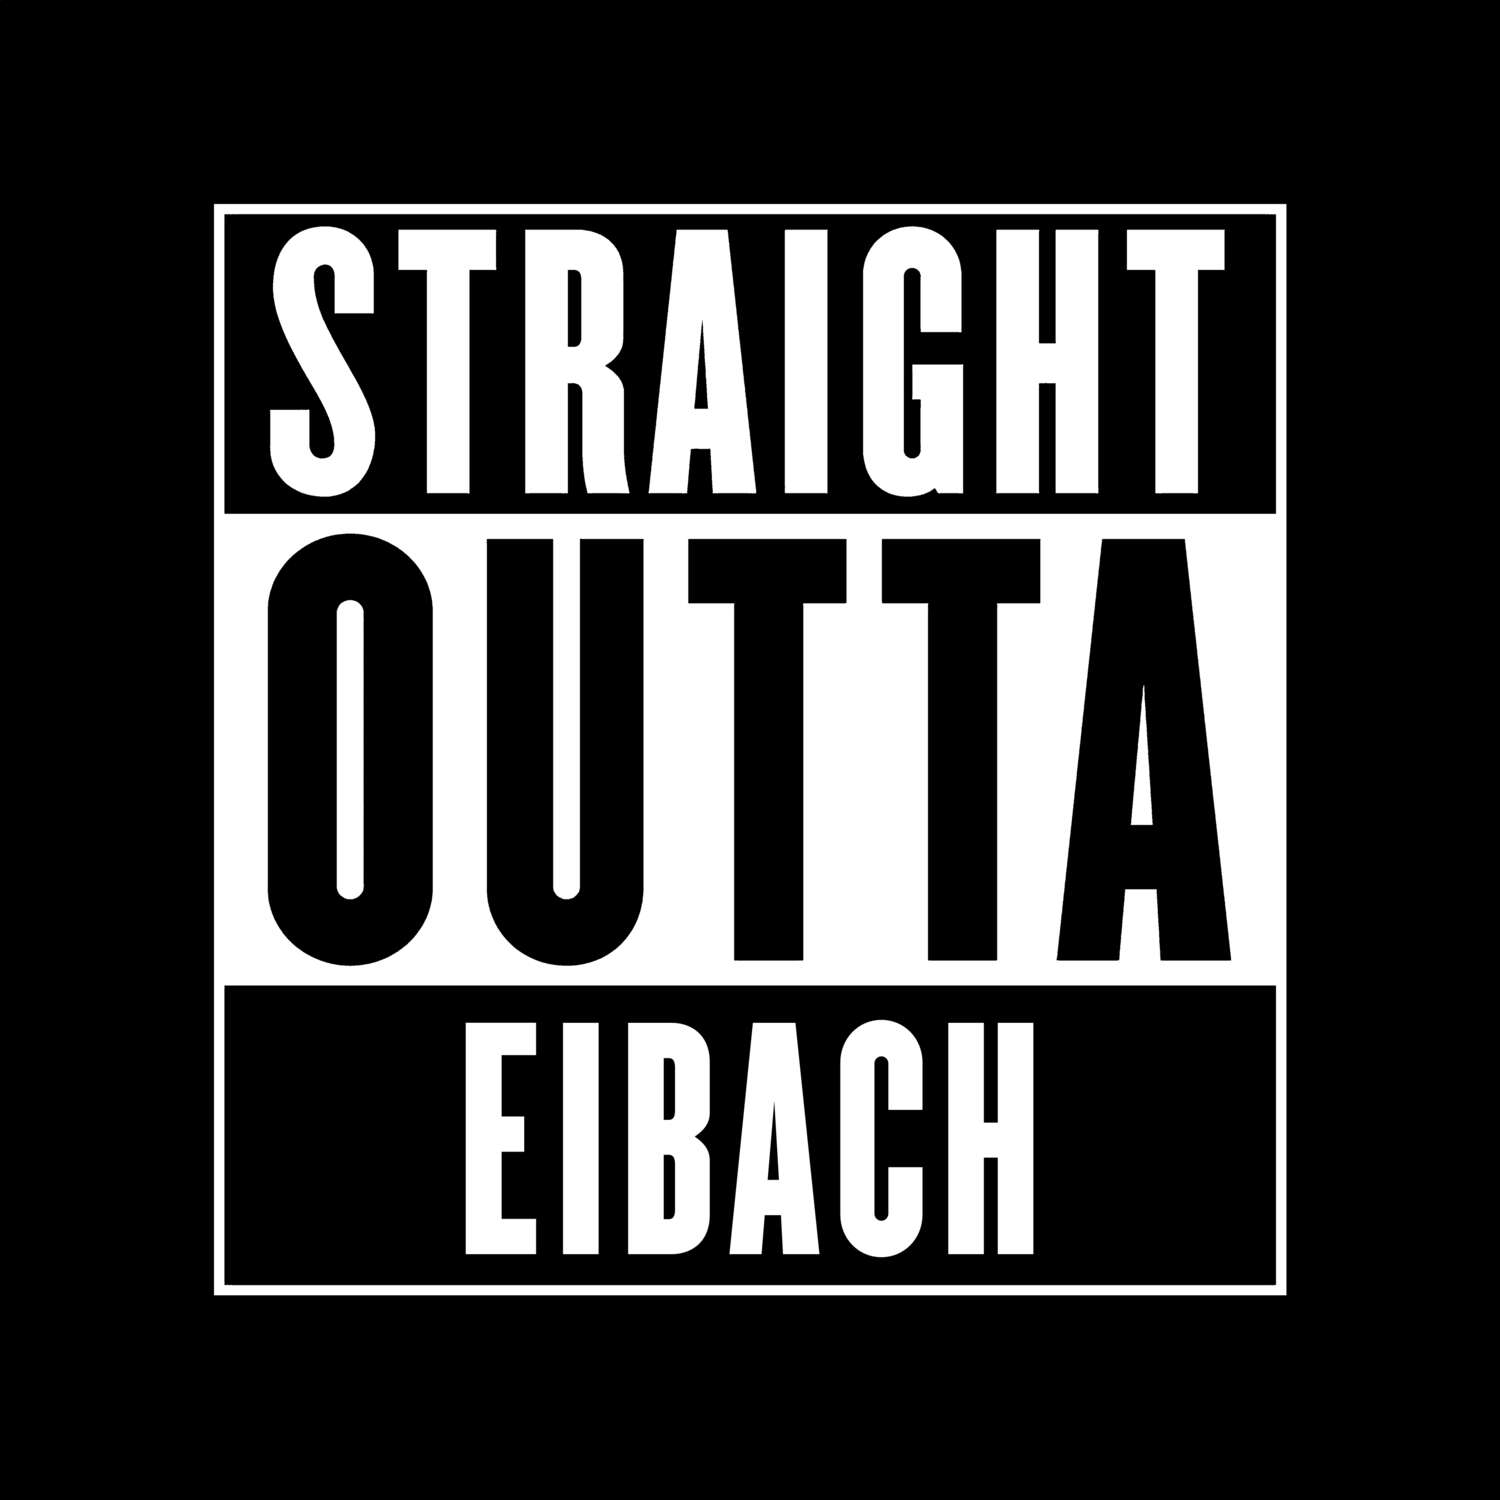 Eibach T-Shirt »Straight Outta«